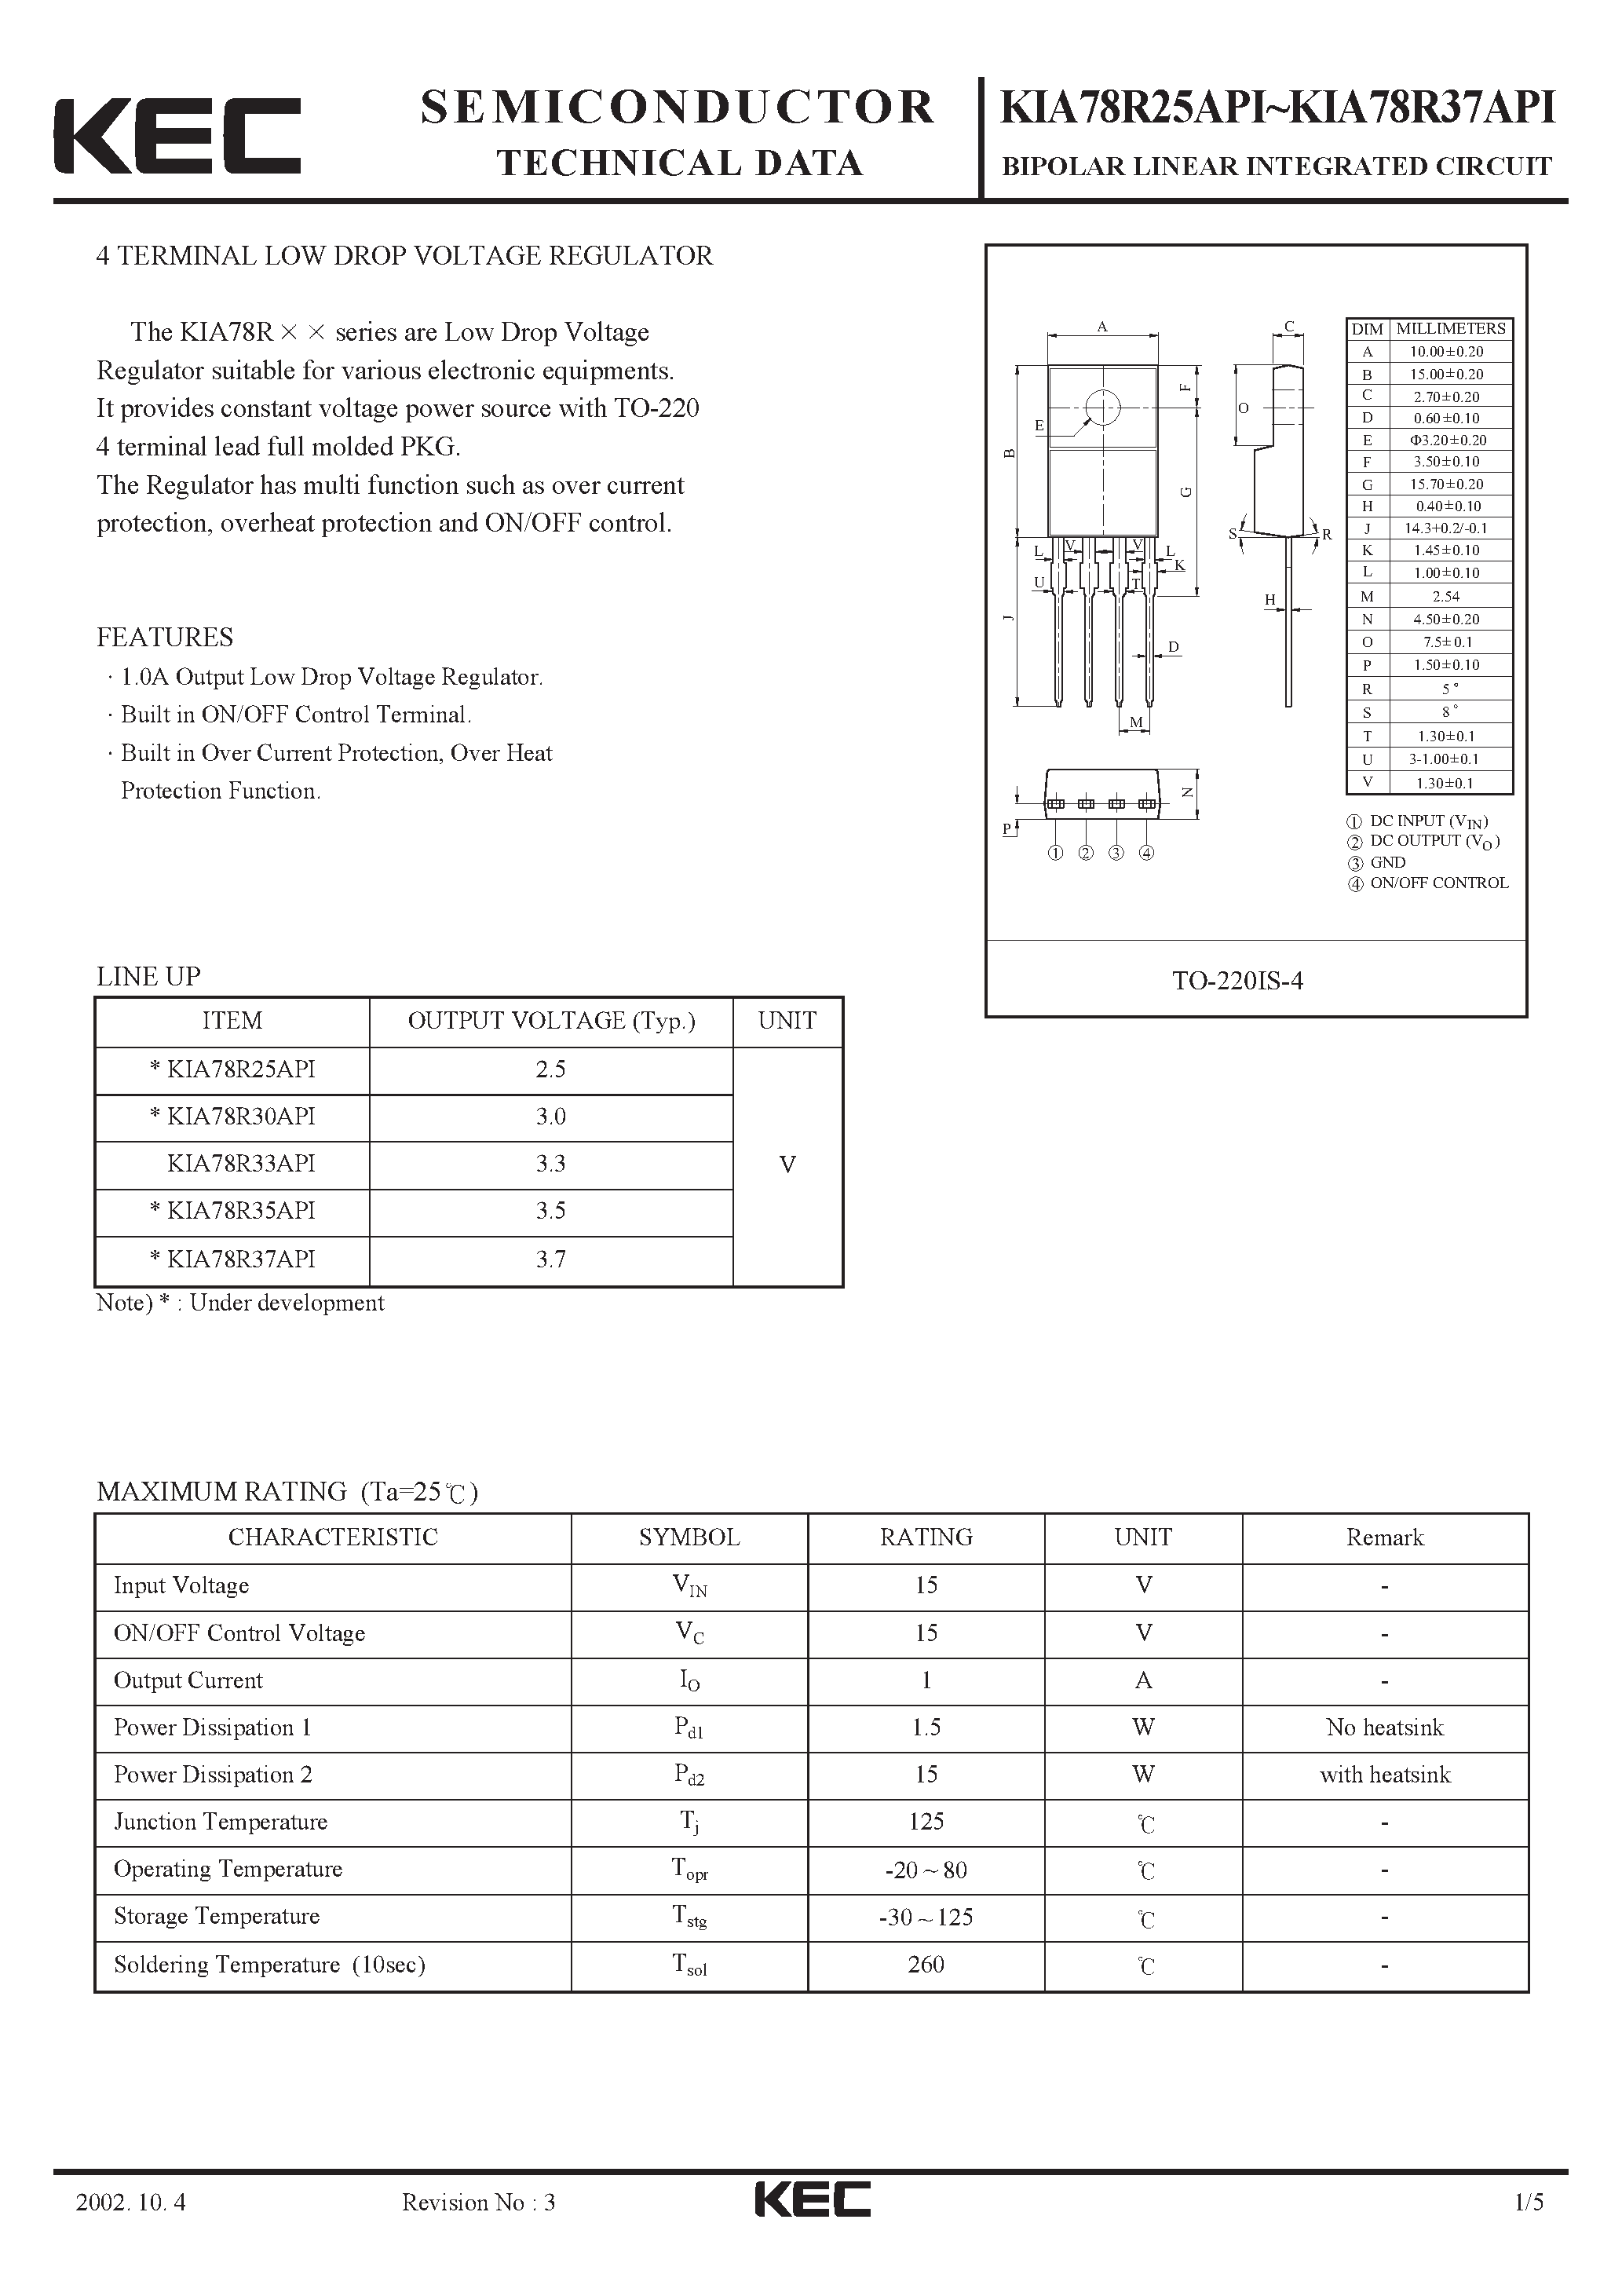 Datasheet KIA78R35API - BIPOLAR LINEAR INTEGRATED CIRCUIT (4 TERMINAL LOW DROP VOLTAGE REGULATOR) page 1